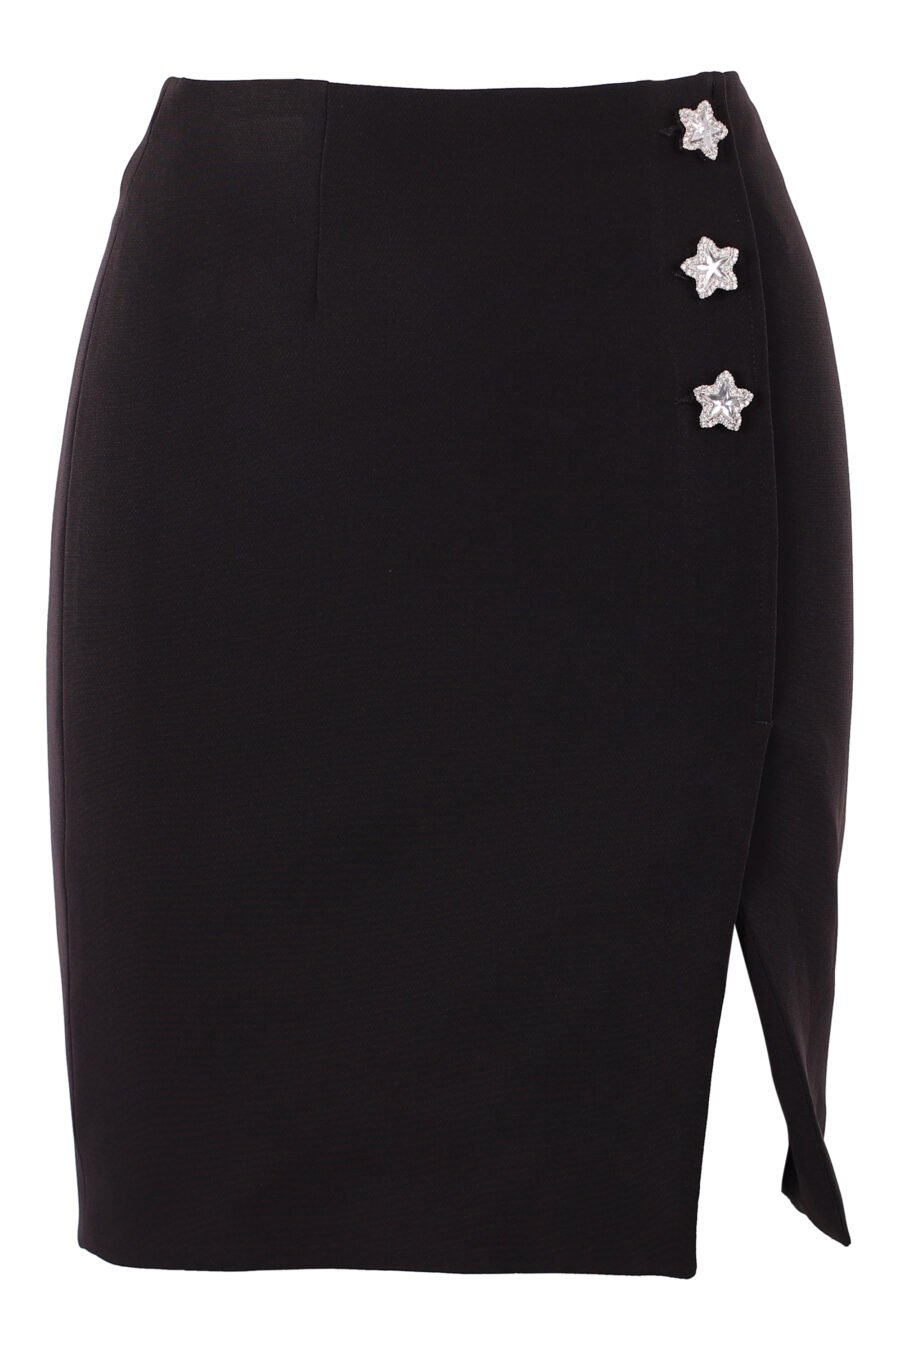 Falda negra con botones de estrellas y abertura - IMG 6272